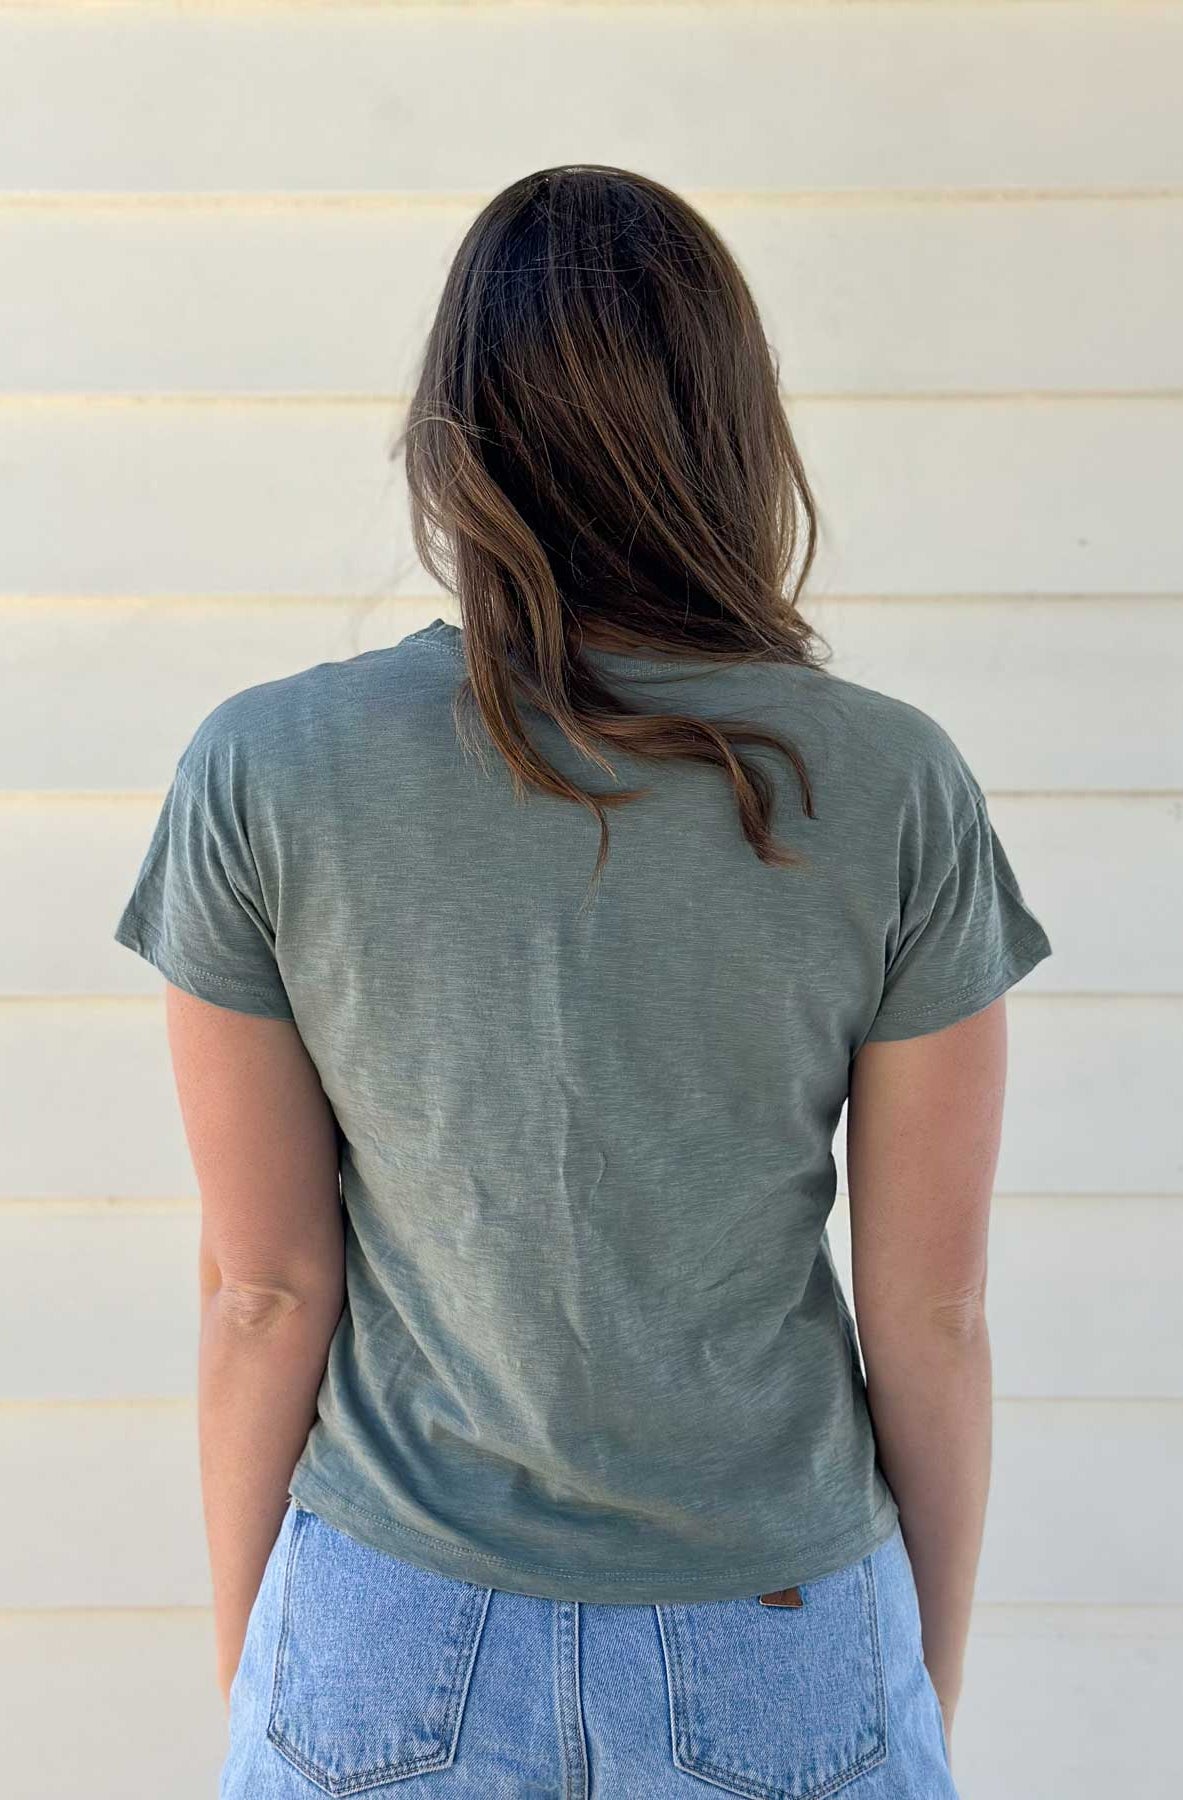 Techstyles: Women's Sticky Fingers Longboat Key T-Shirt